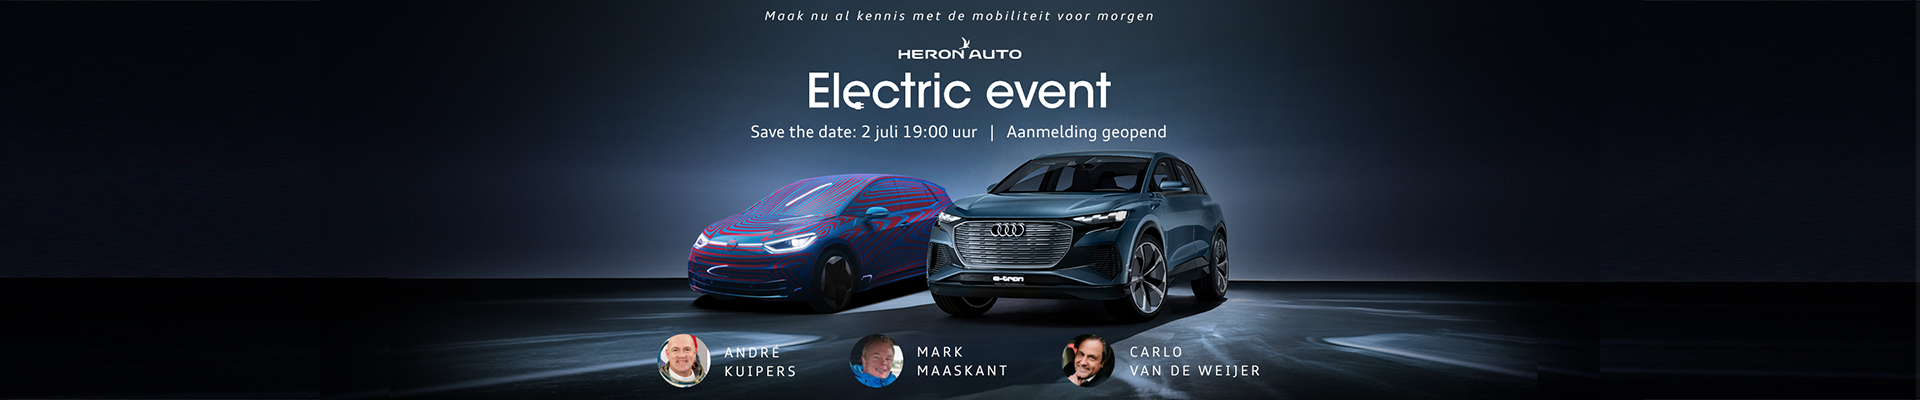 Heron Auto Electric Event